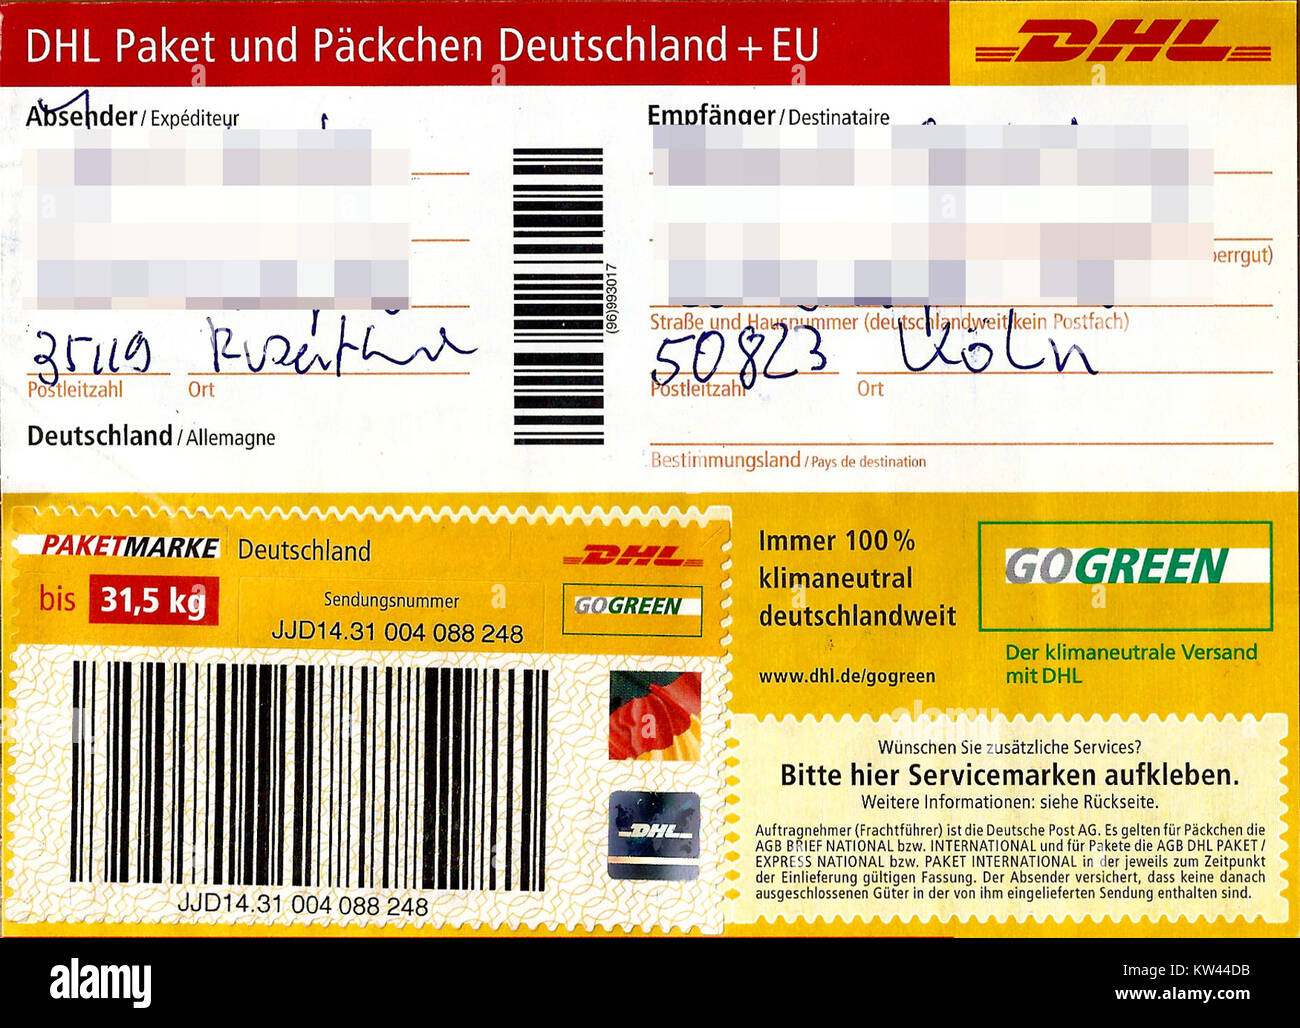 Paketaufkleber Dhl Paket Mit Paketmarke Bis 31 5 Kg 2016 Stock Photo Alamy